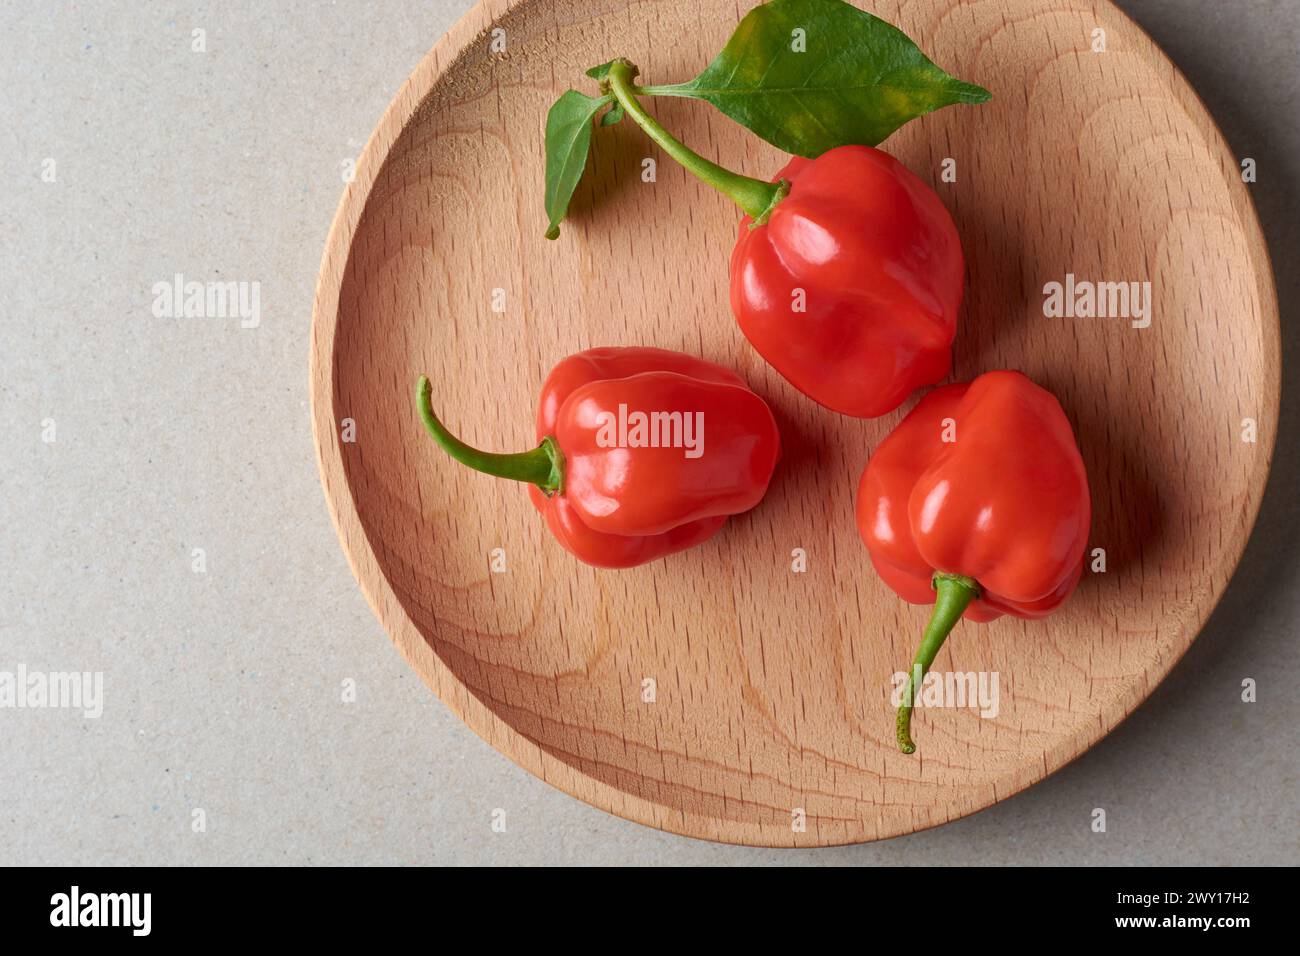 Drei rote Habanero-Chili-Paprika auf Tablett, Paprika Chinense, heißeste Gewürze mit faltiger oder genoppter Haut, intensiver Würzgeschmack, kulinarische Zutat Stockfoto